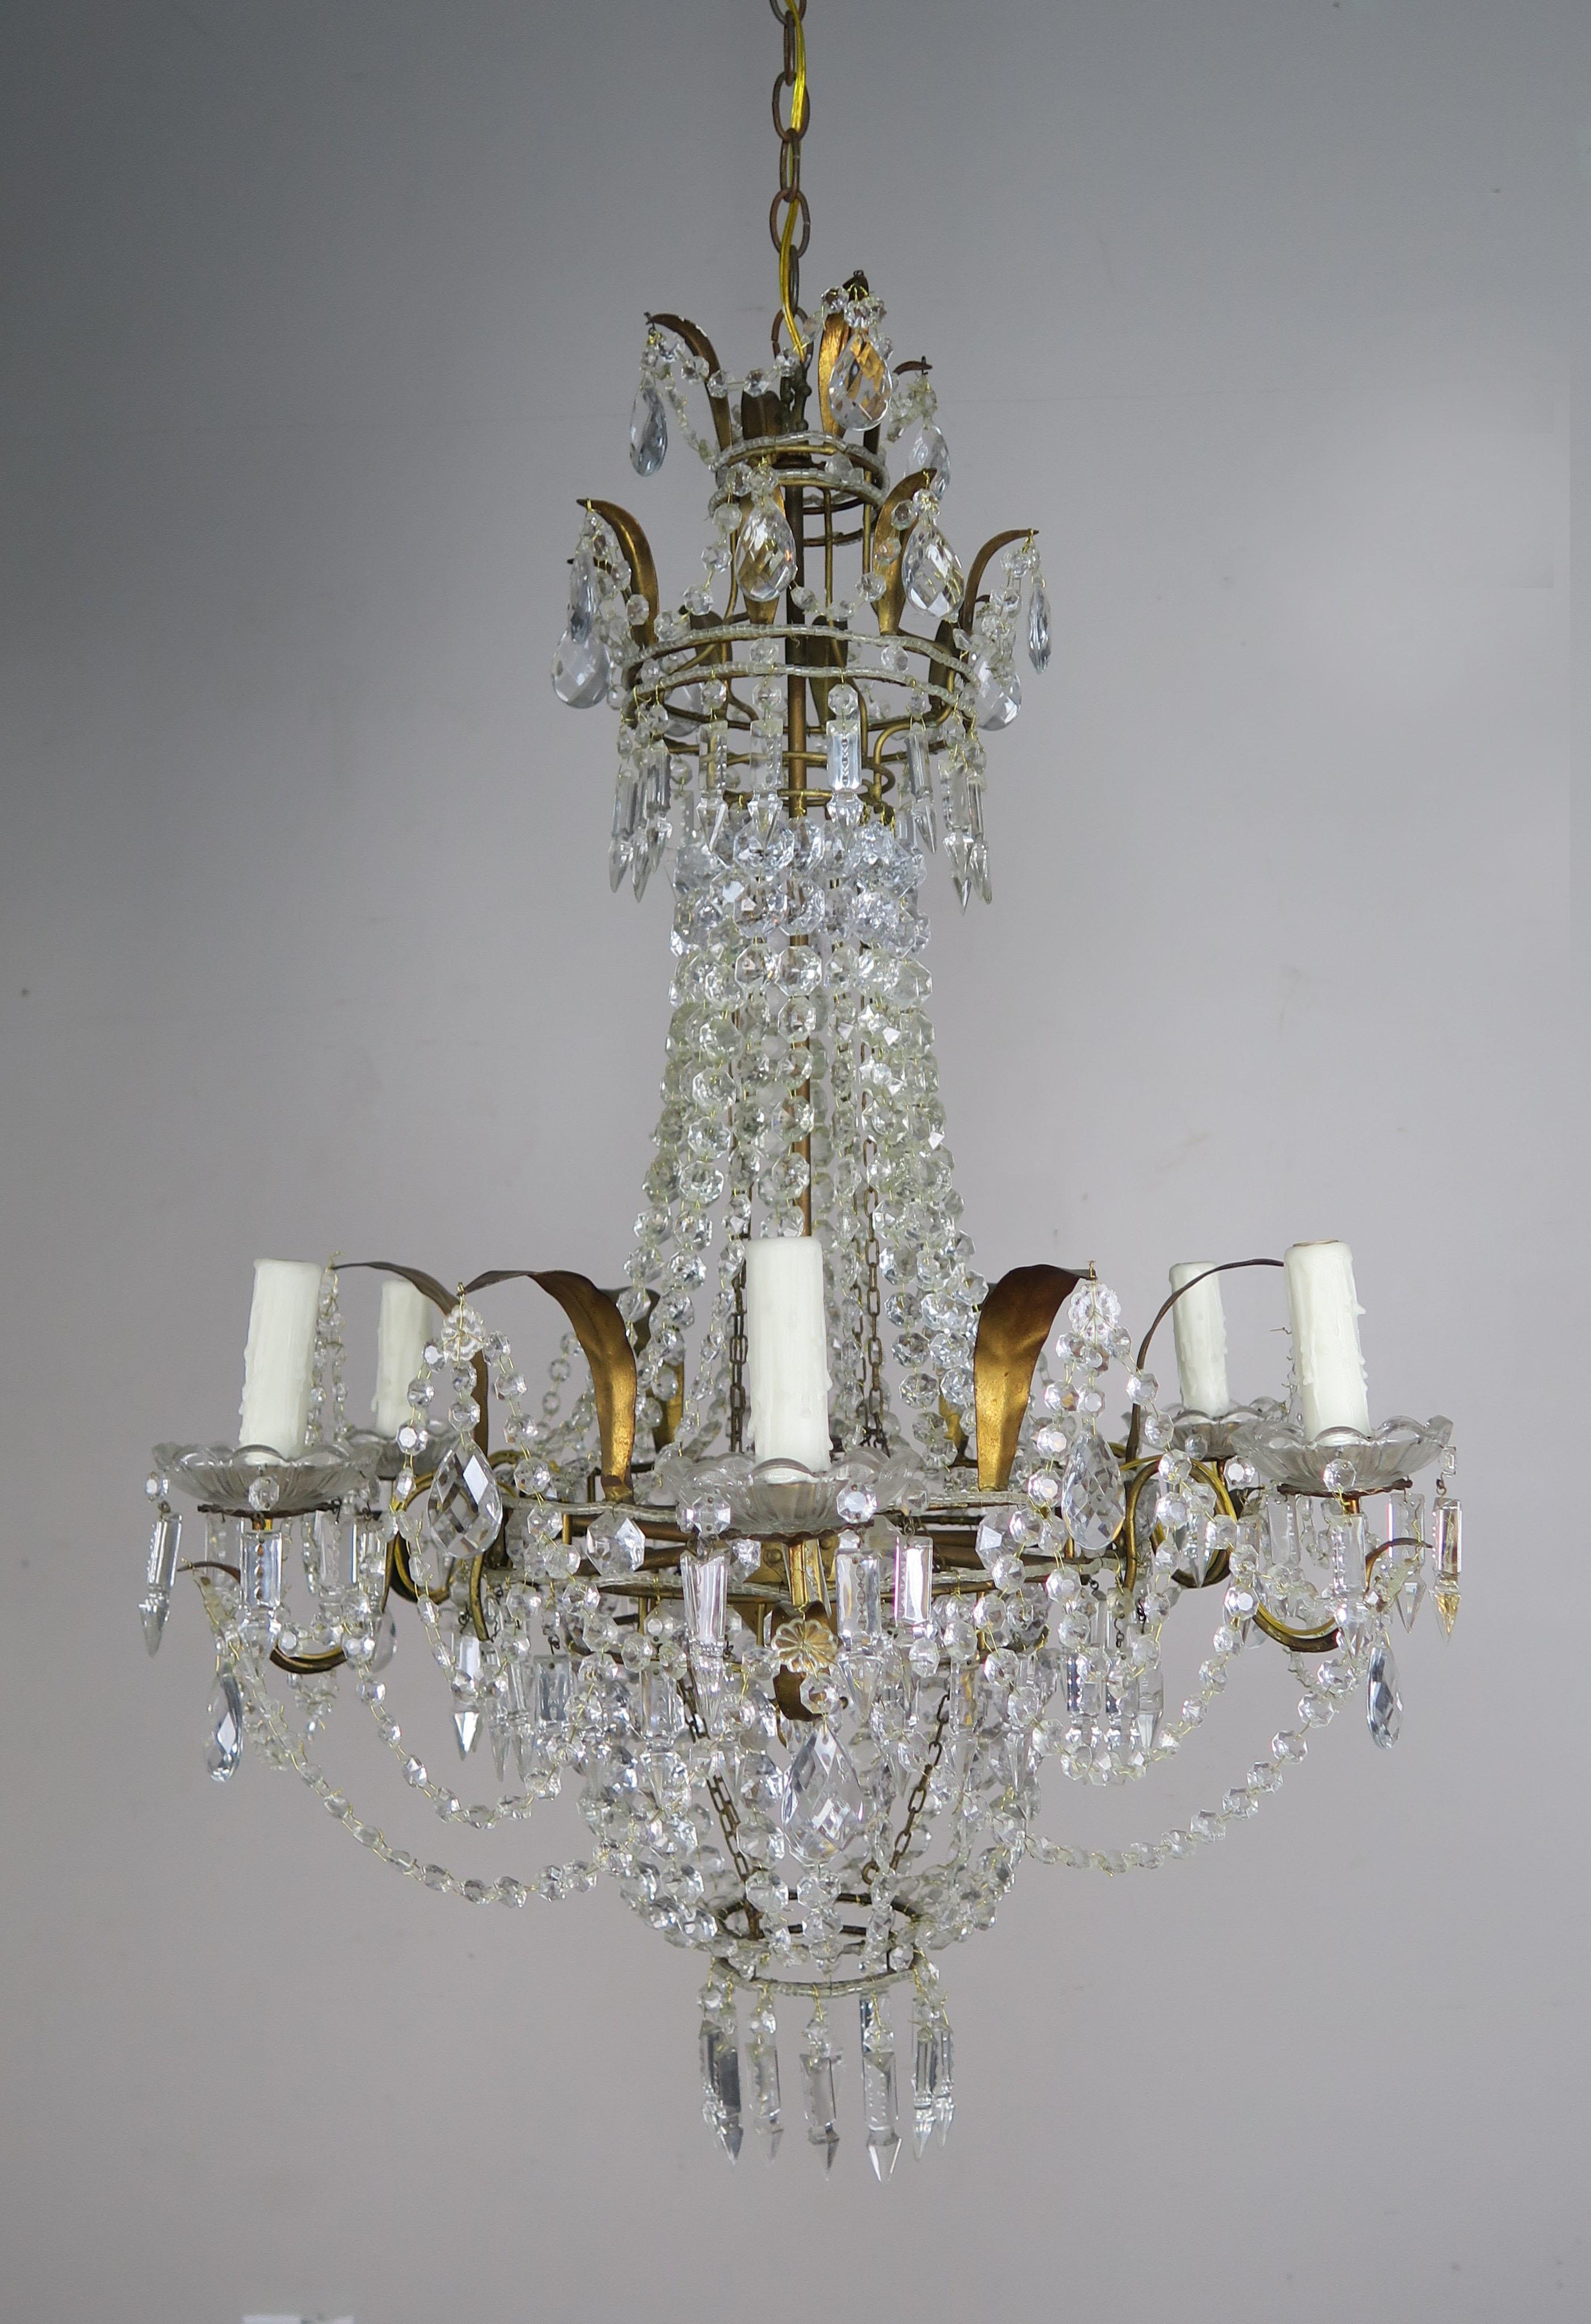 Lustre français à six lumières de style Louis XV en métal doré et perles de cristal avec des guirlandes de cristaux incorporées dans tout le luminaire. Les guirlandes forment des motifs uniques qui rendent ce luminaire différent de tous ceux que